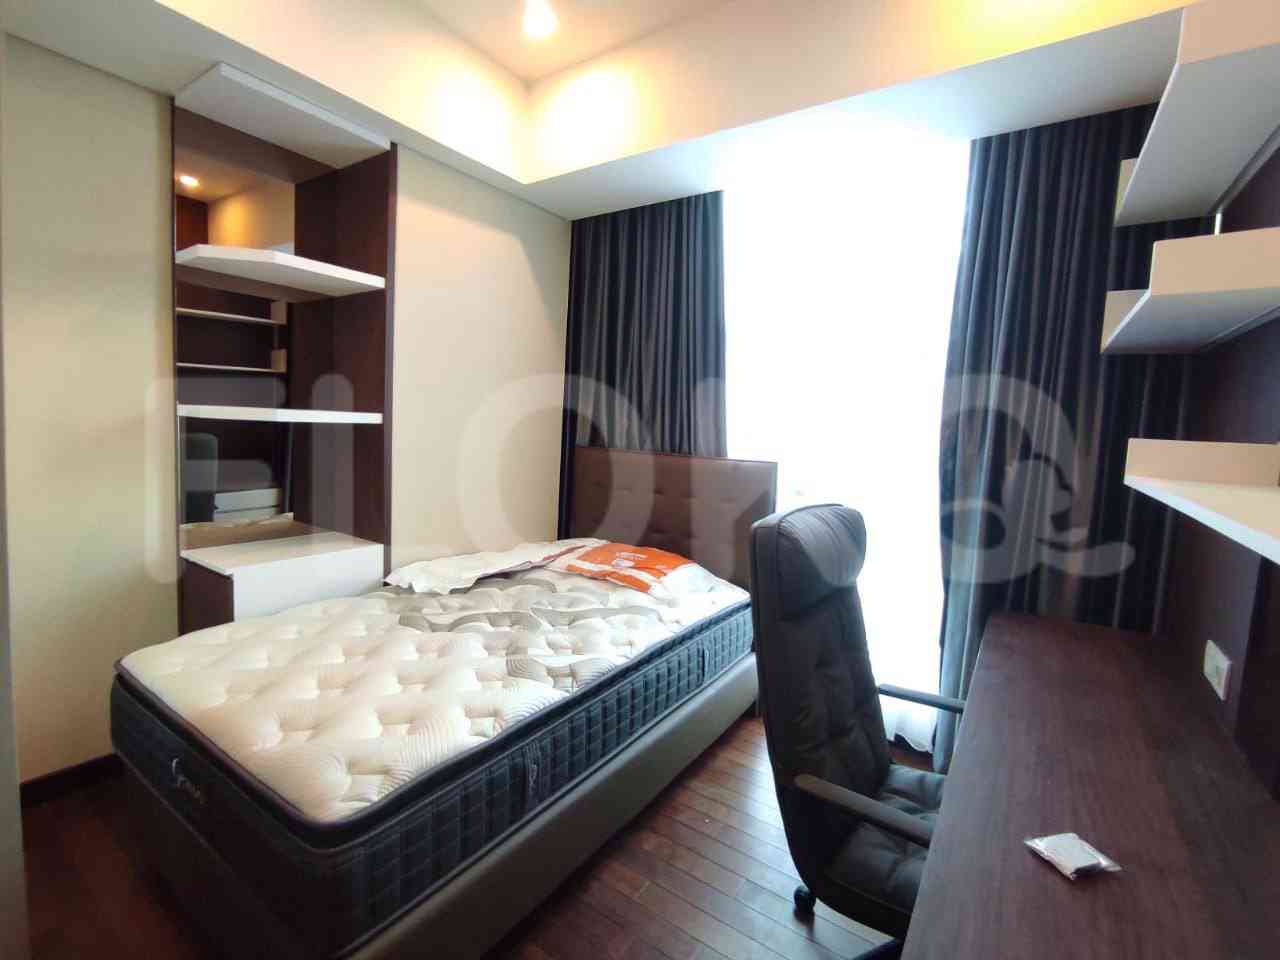 3 Bedroom on 30th Floor for Rent in Casa Grande - fte780 4